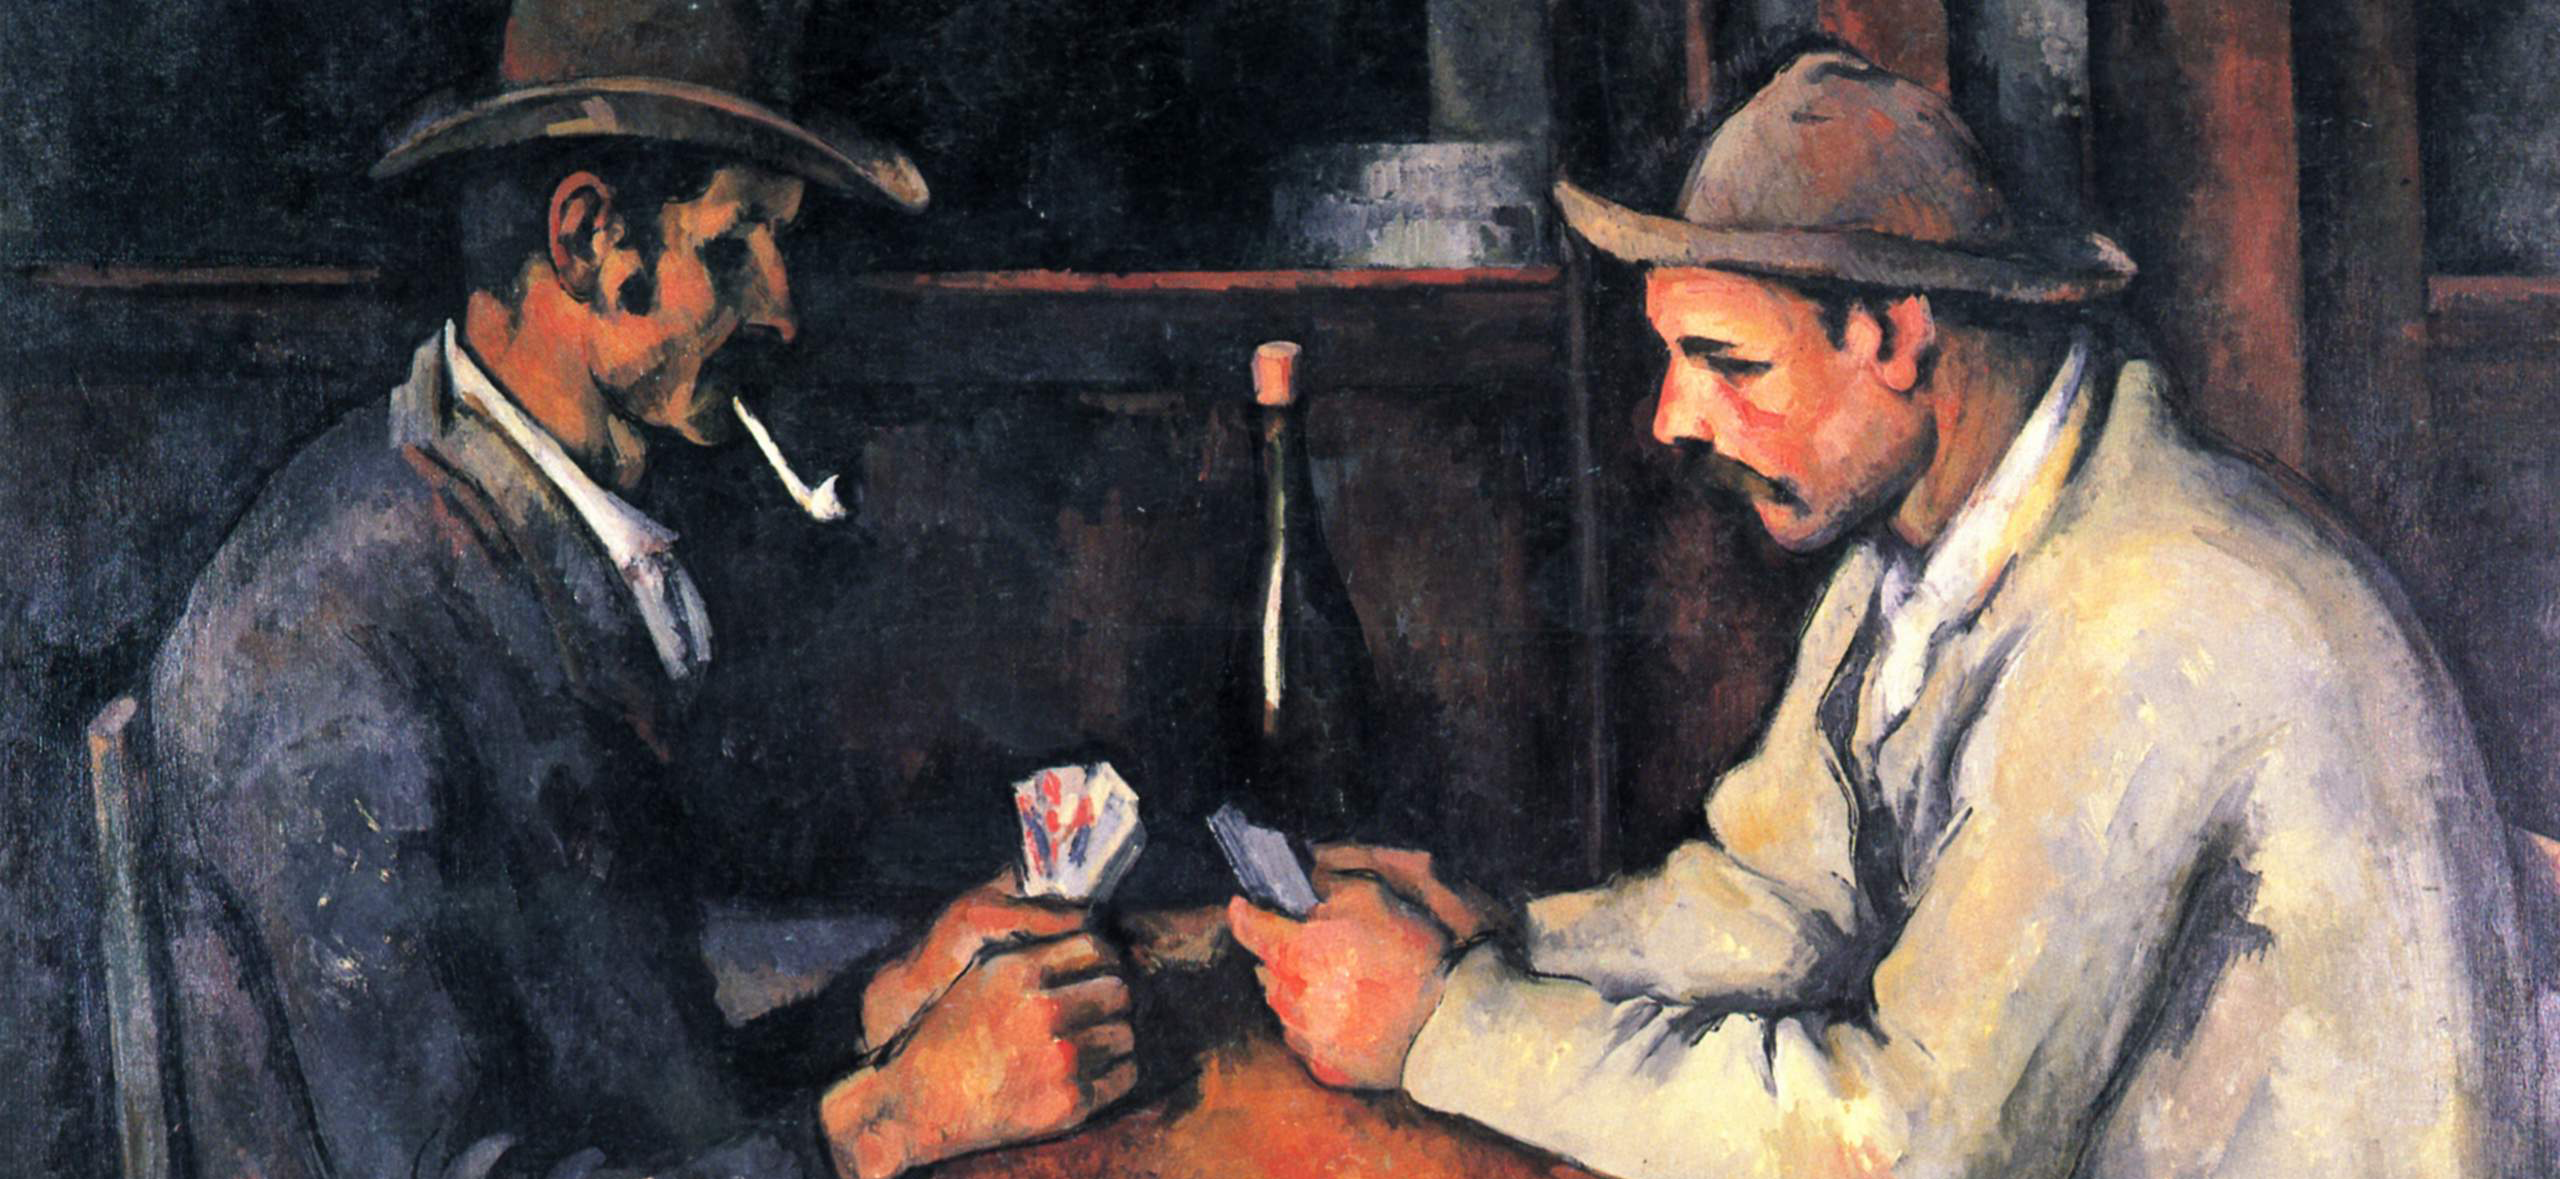 3. The Card Players, Paul Cézanne